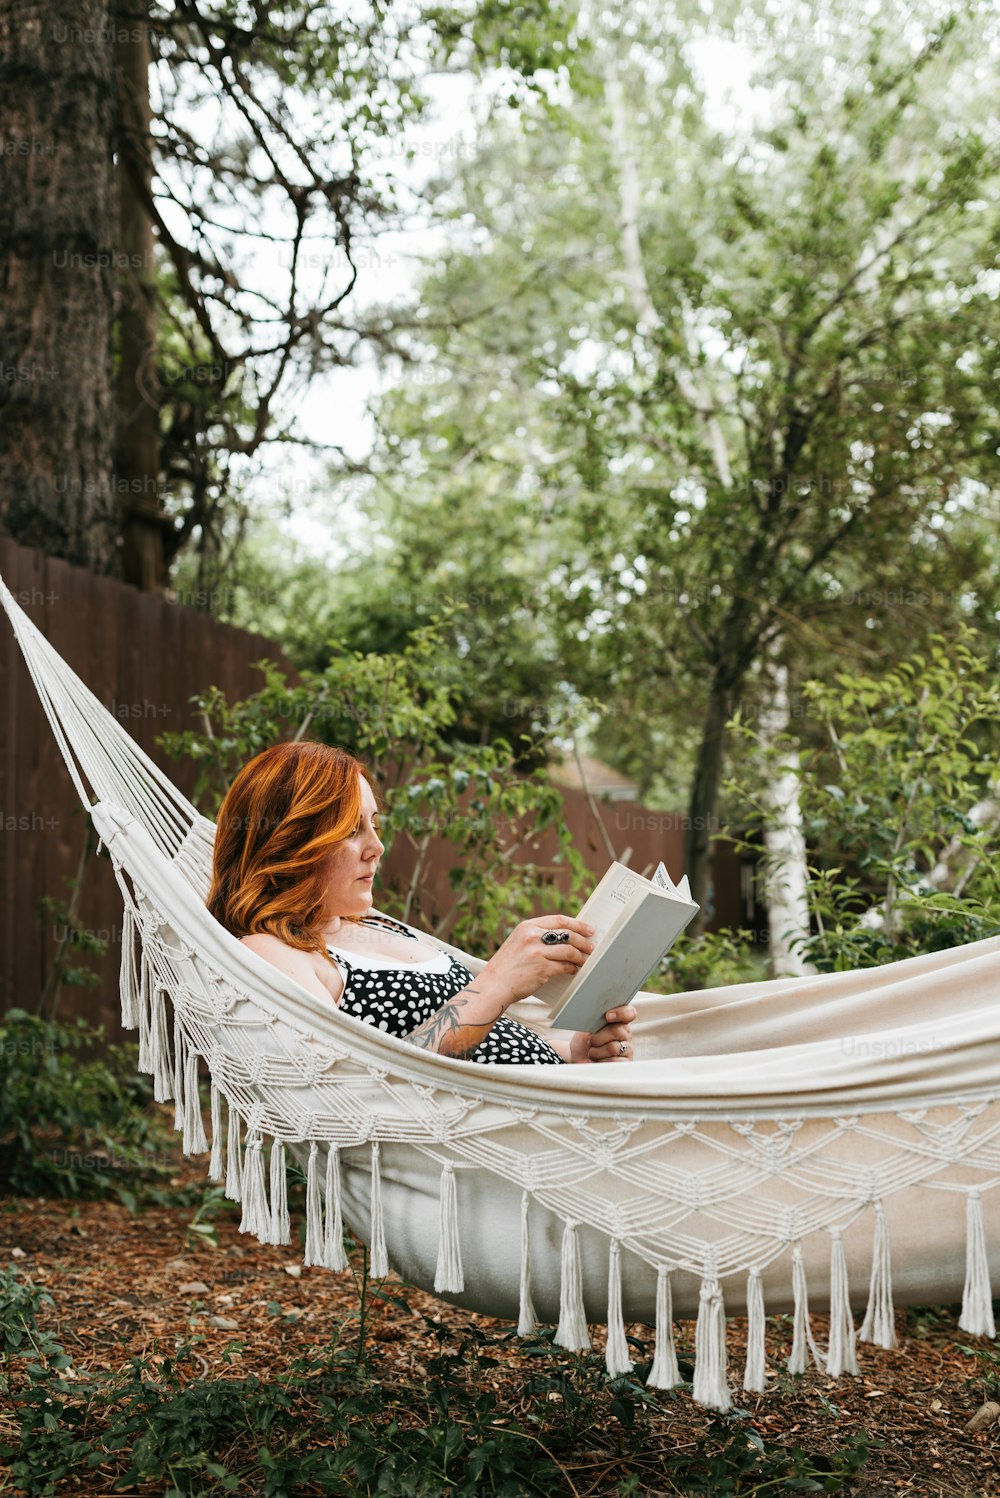 ハンモックに座って本を読む女性